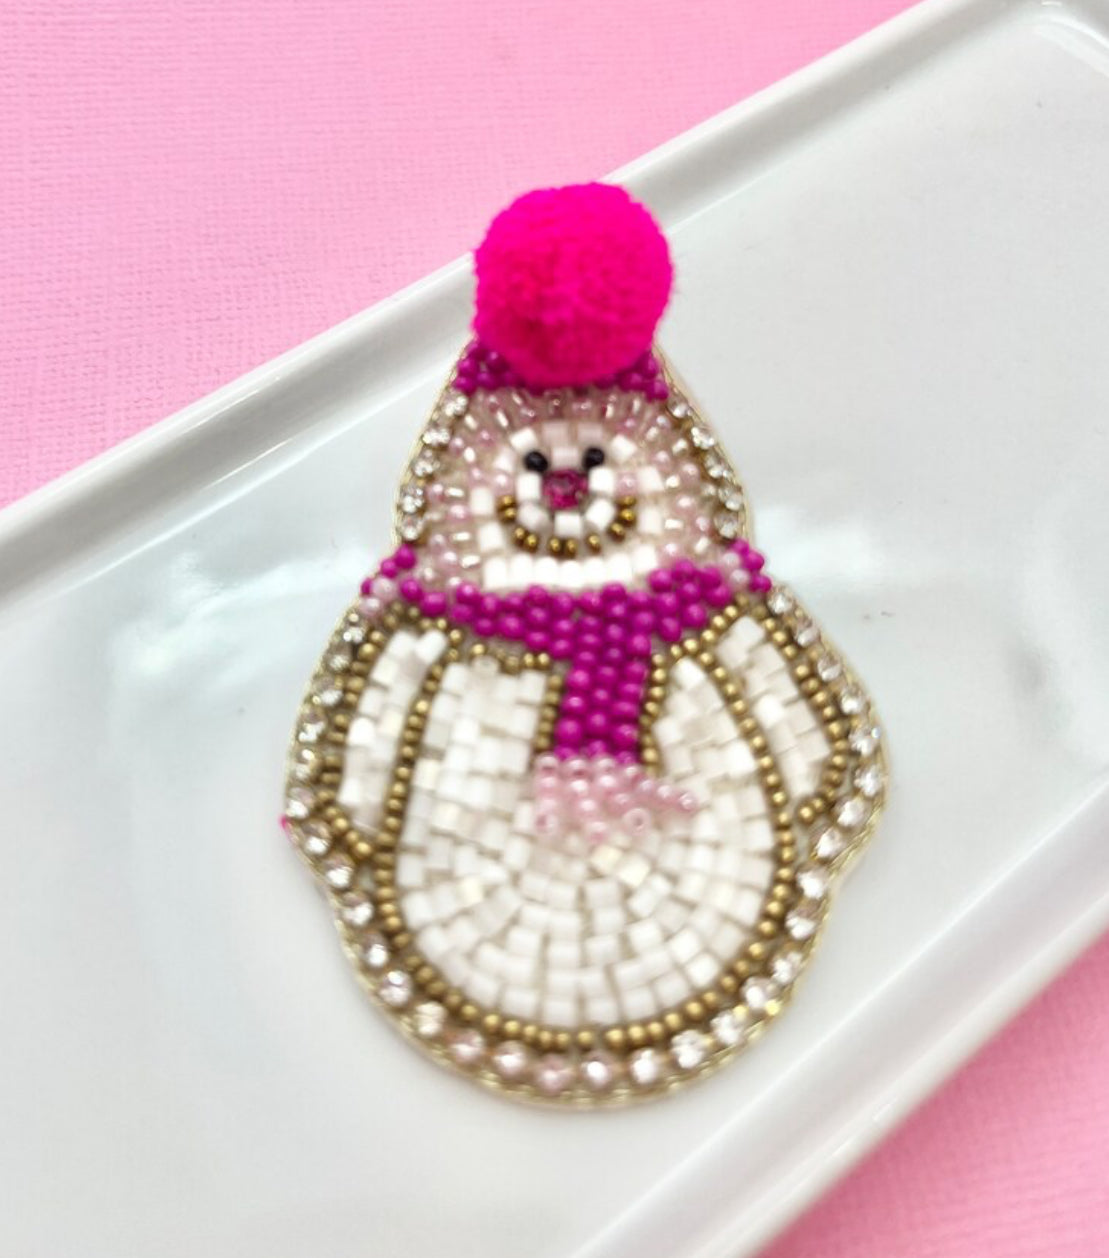 Pink Snowman Earrings